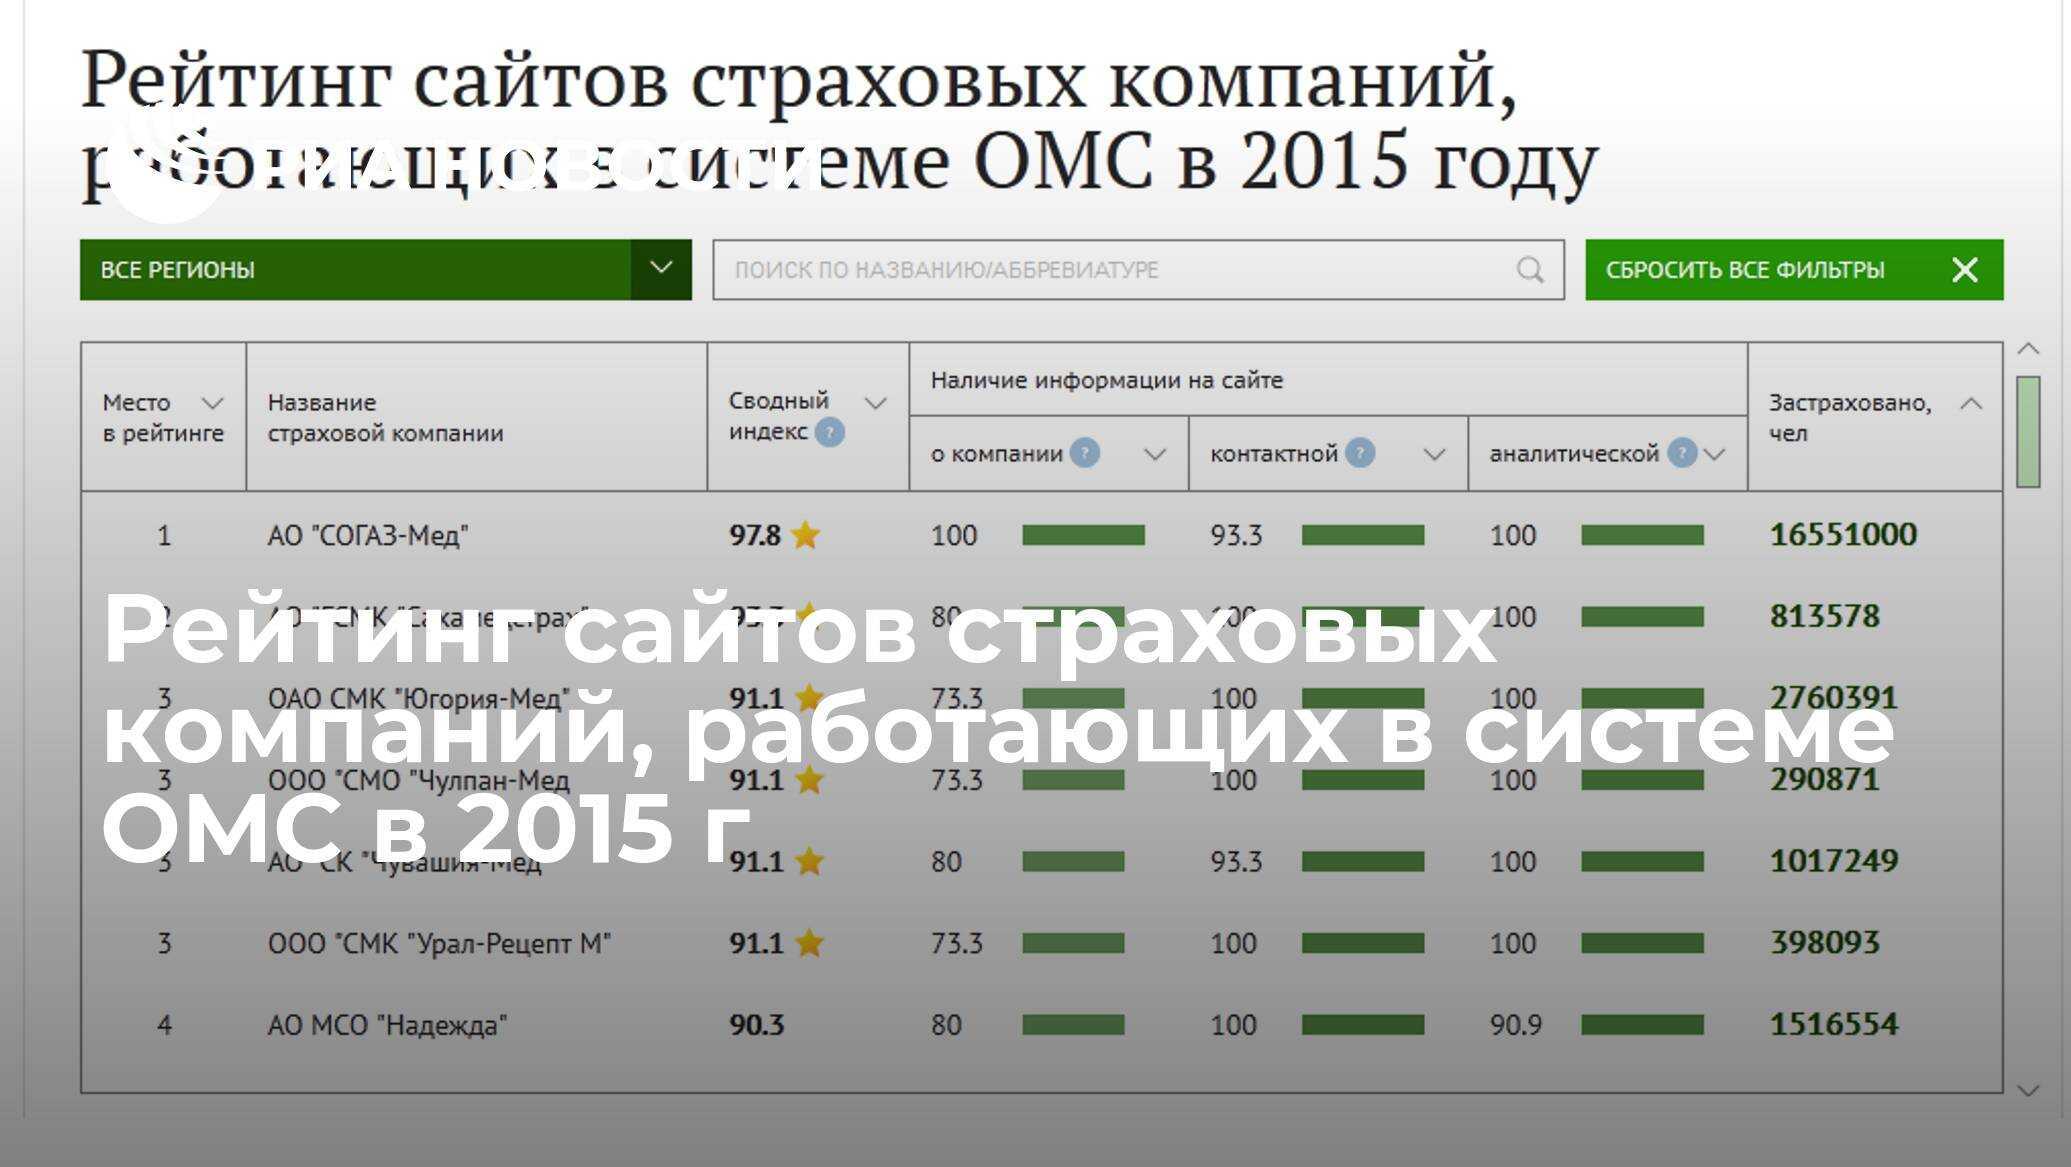 Рейтинг страховых омс. Рейтинг страховых компаний. Рейтинг страховых компаний ОМС. Рейтинг медицинских страховых компаний в Москве. Сайты страховых компаний.